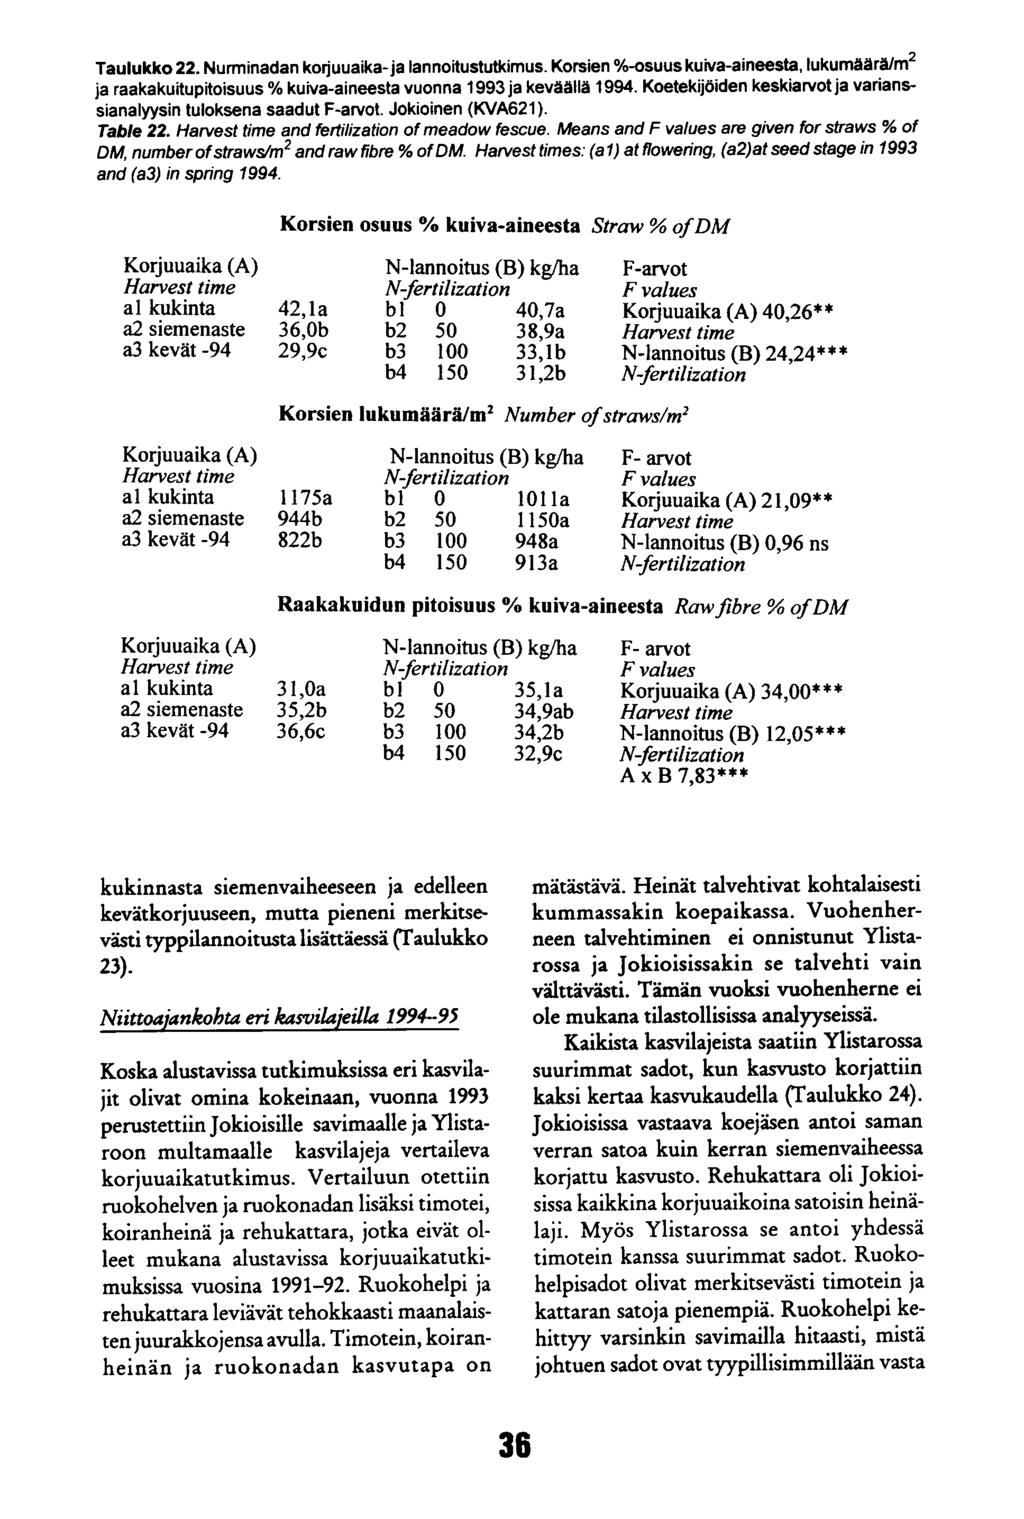 Taulukko 22. Nurminadan korjuuaika- ja lannoitustutkimus. Korsien %-osuus kuiva-aineesta, lukumäärä/m2 ja raakakuitupitoisuus % kuiva-aineesta vuonna 1993 ja keväällä 1994.